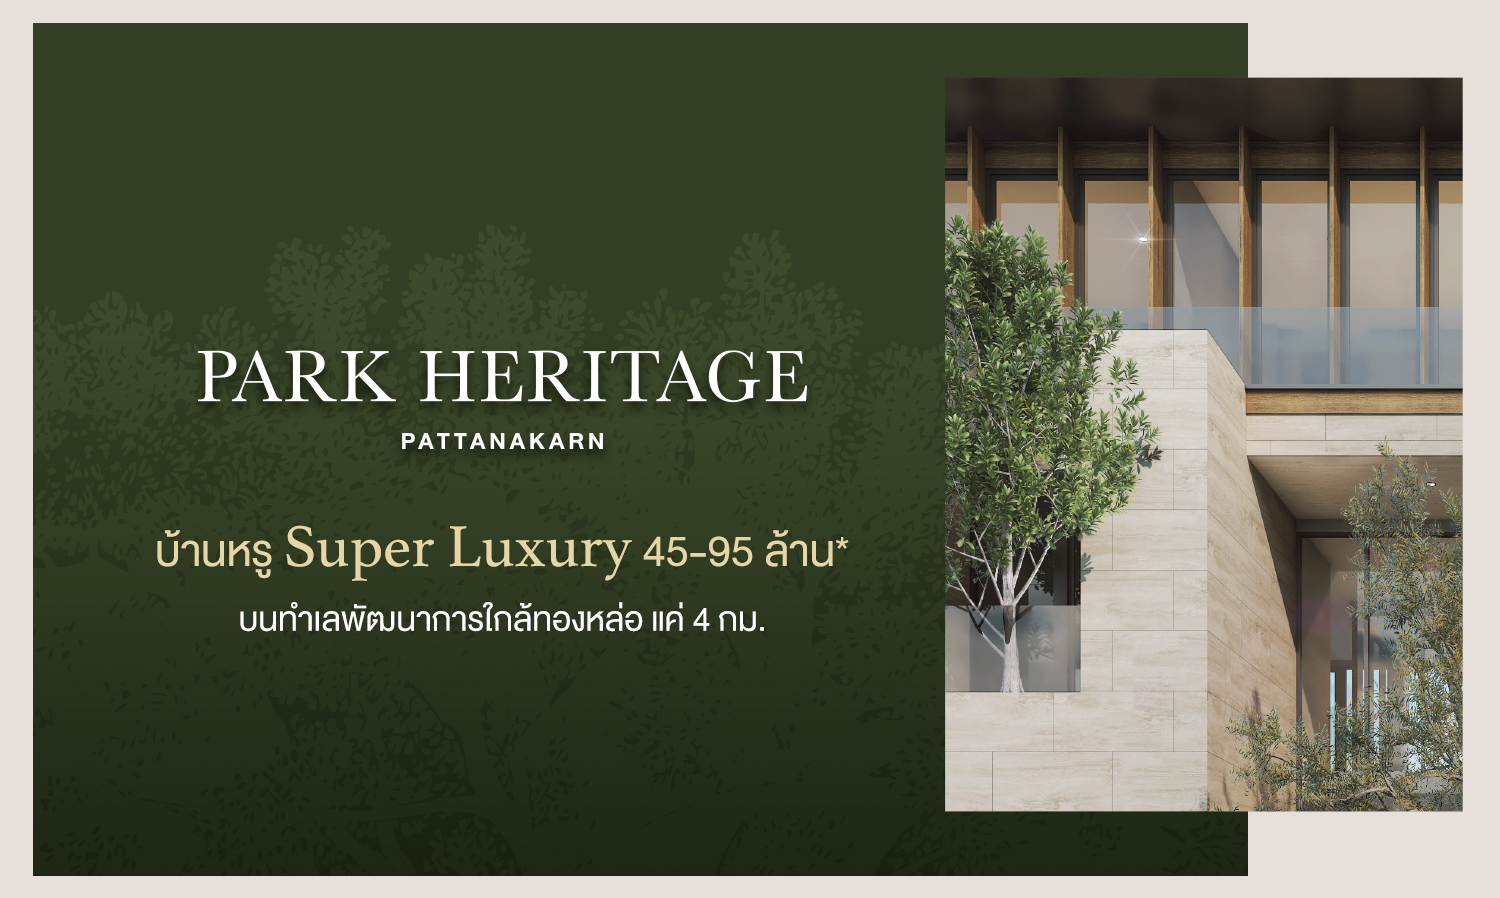 Park Heritage บ้านหรู Super Luxury 49-95 ล้าน บนทำเลพัฒนาการใกล้ทองหล่อ แค่ 4 กม.